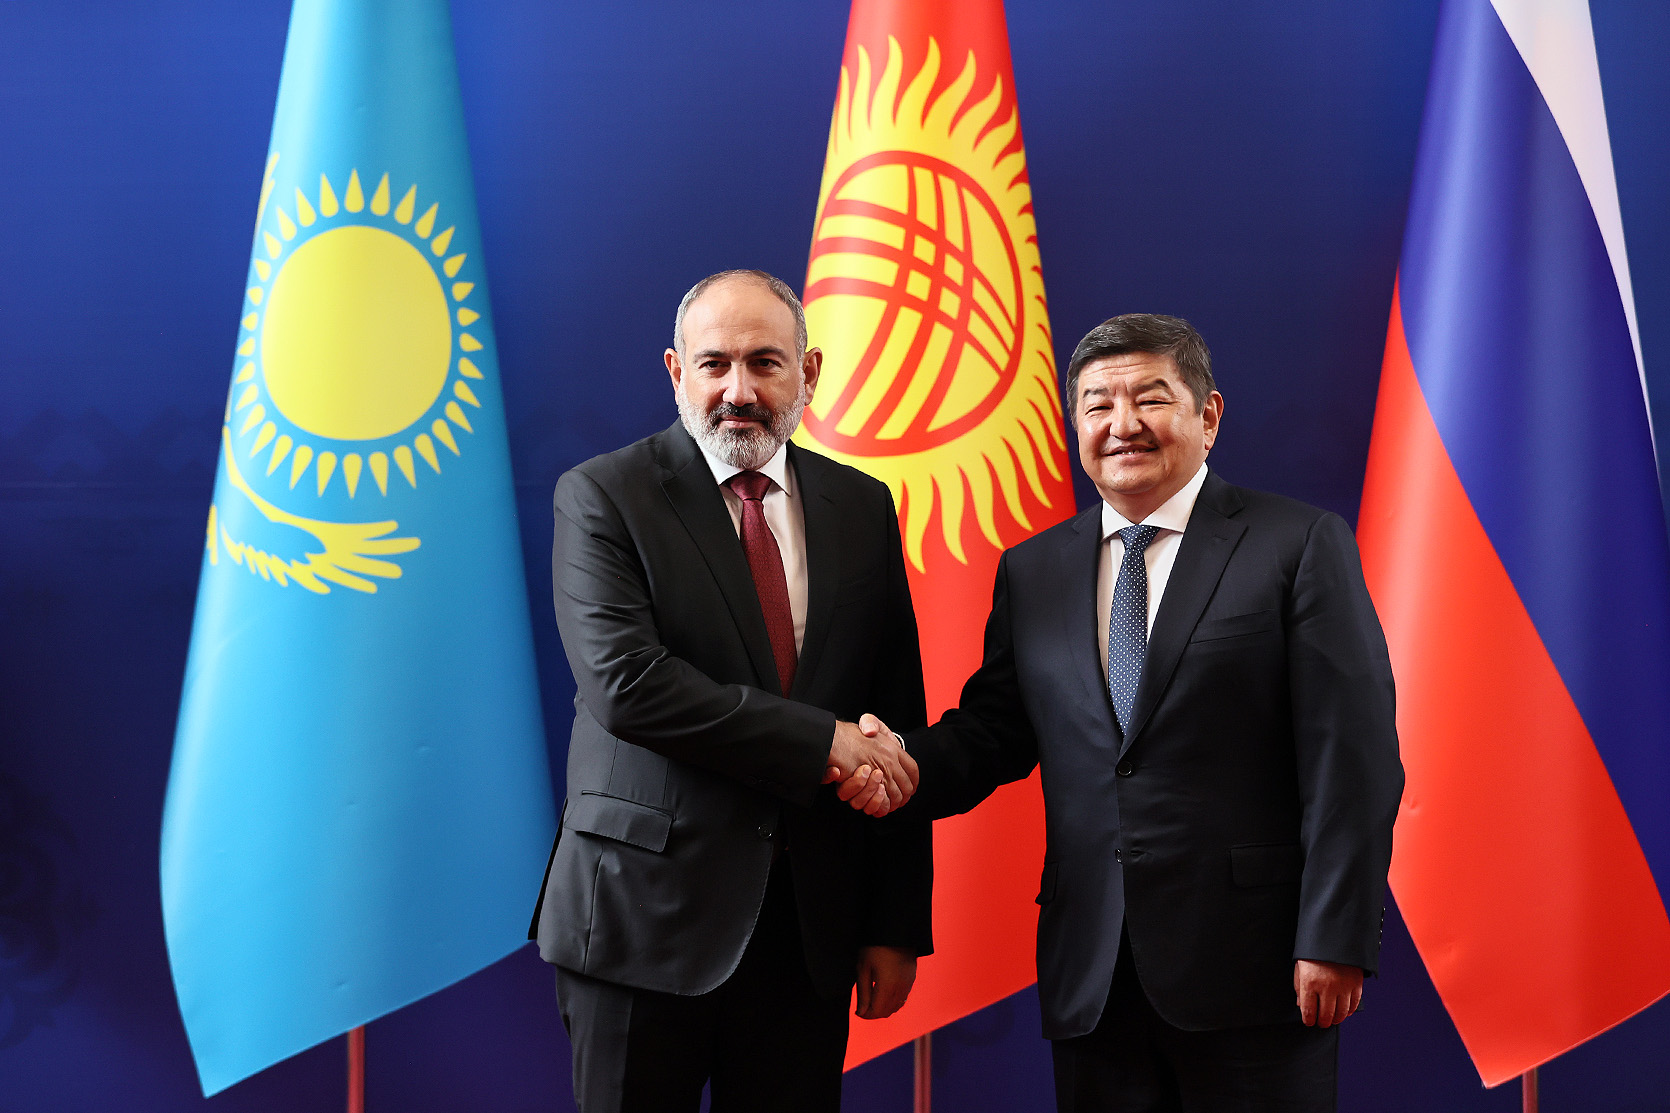 Необходимо сконцентрироваться, чтобы попытаться сохранить тот темп, который существует в товарообороте между странами ЕАЭС: Никол Пашинян на встрече с президентом Кыргызстана